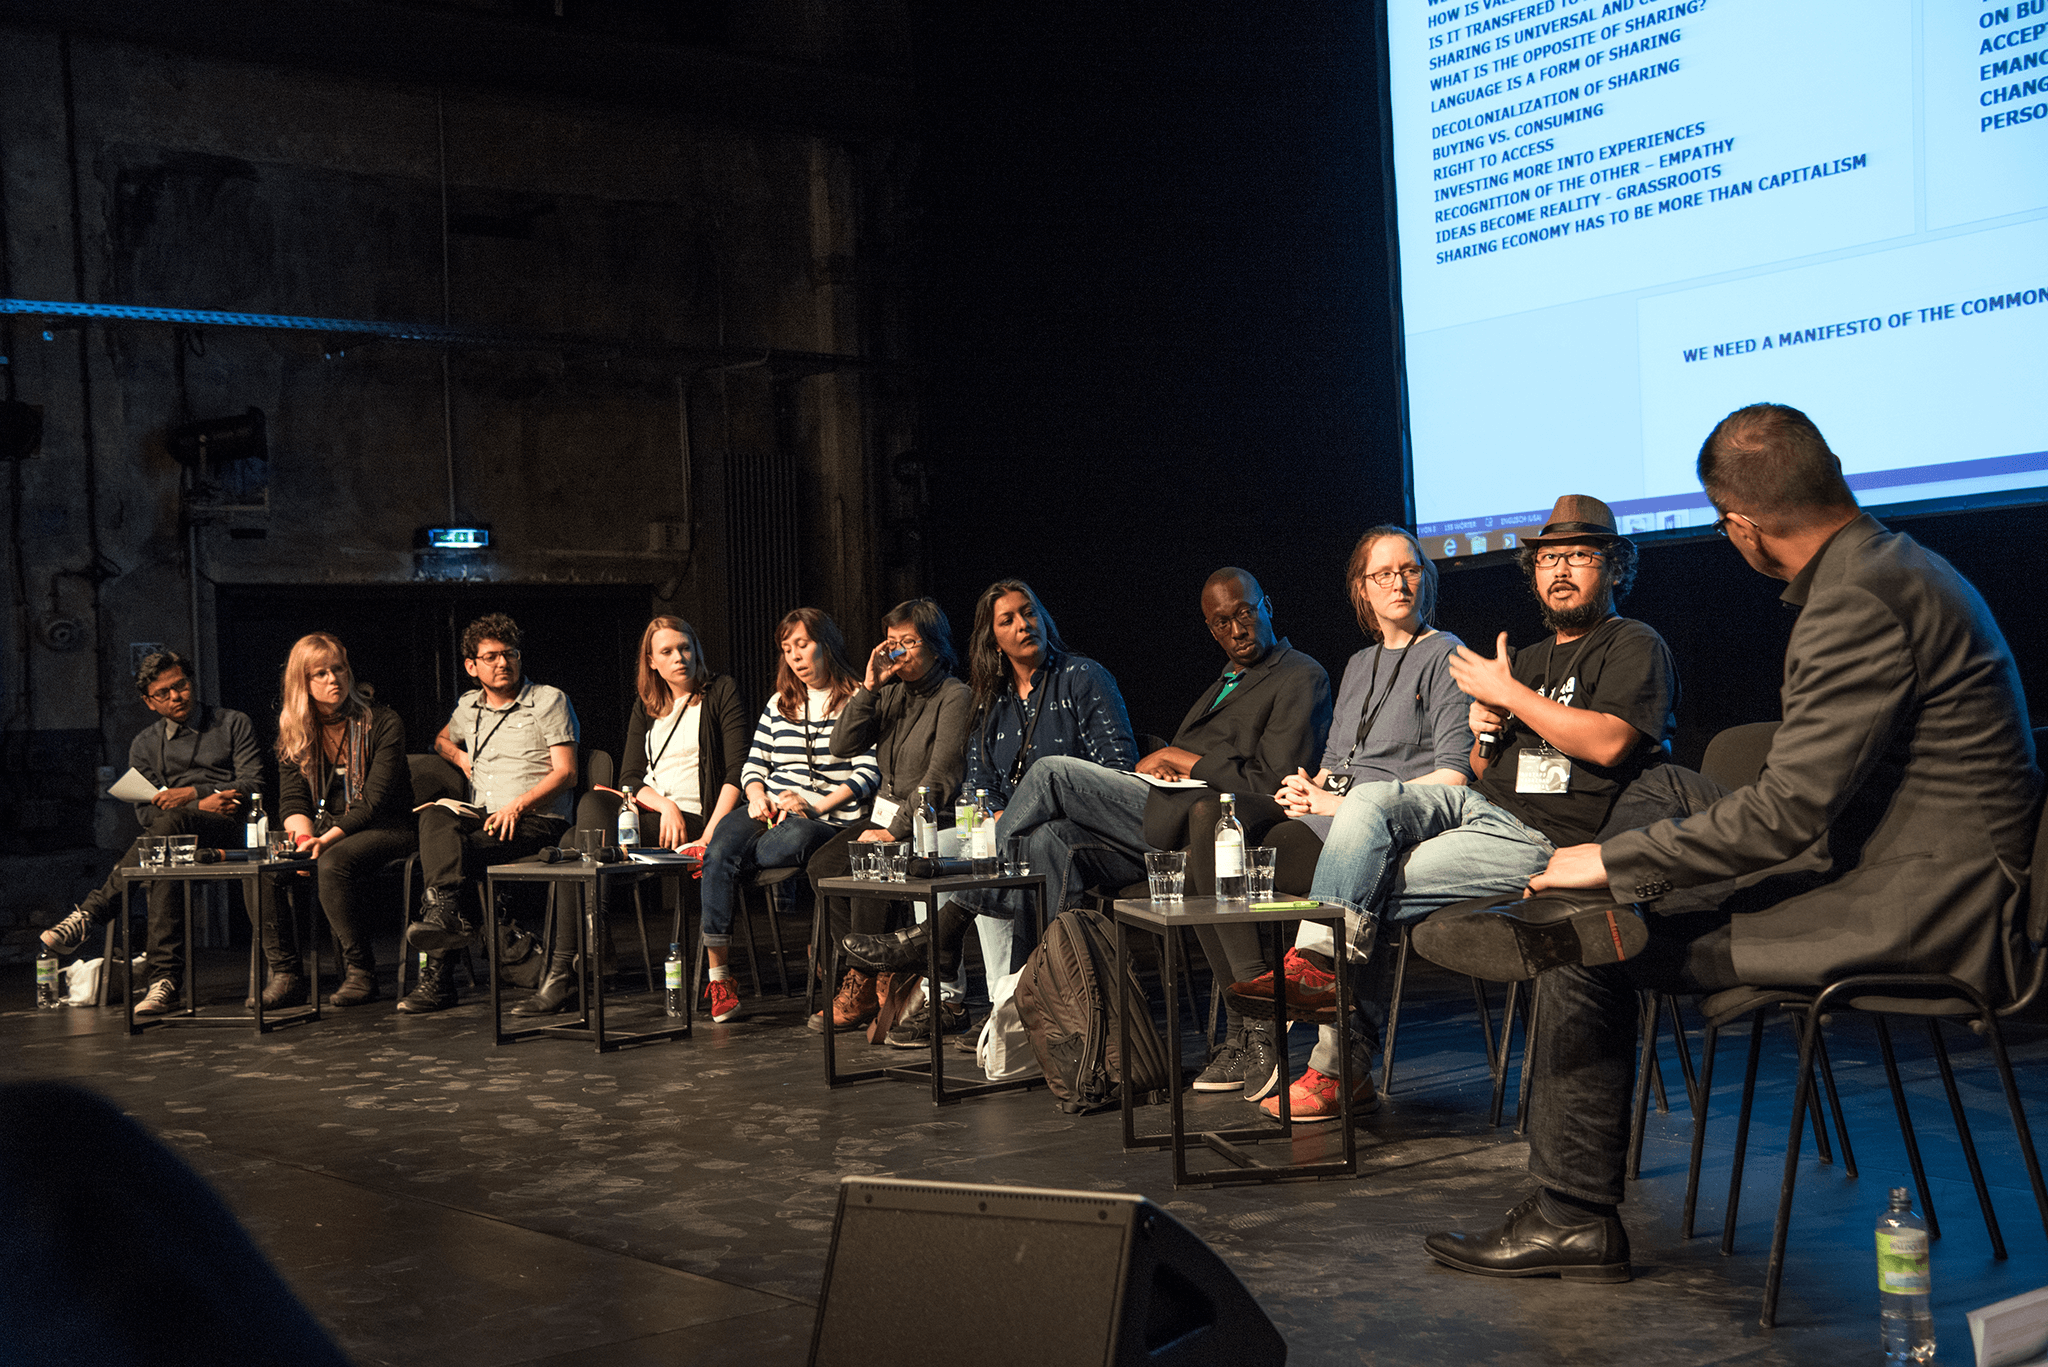 Podiumsdiskussion auf einer Bühne mit digitaler Leinwand / Panel discussion on a stage with digital screen